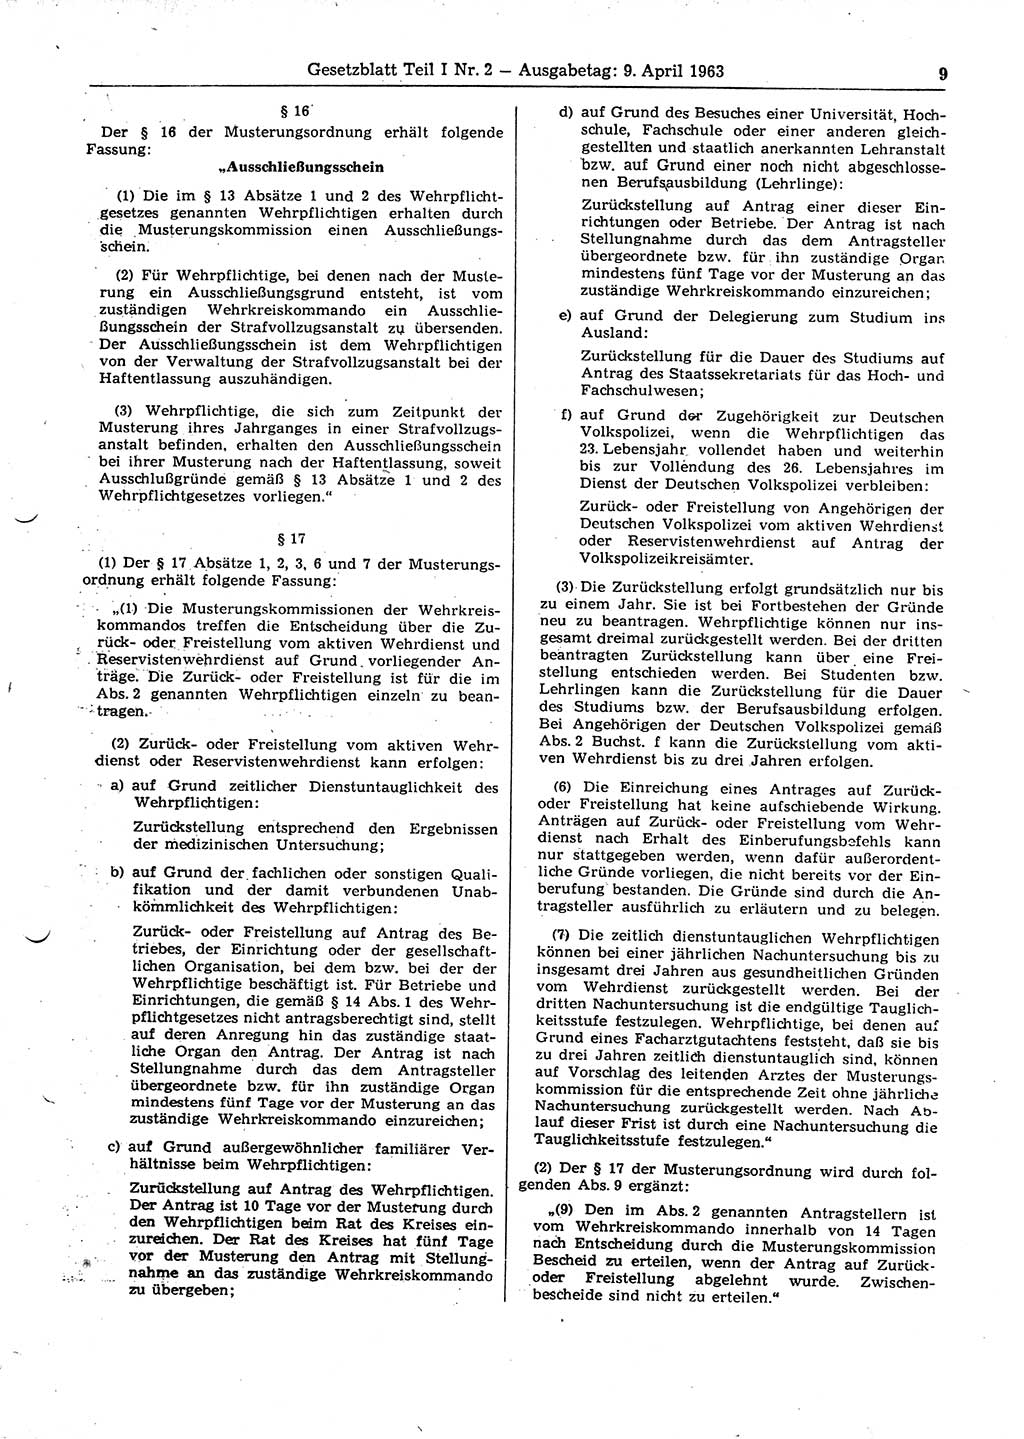 Gesetzblatt (GBl.) der Deutschen Demokratischen Republik (DDR) Teil Ⅰ 1963, Seite 9 (GBl. DDR Ⅰ 1963, S. 9)